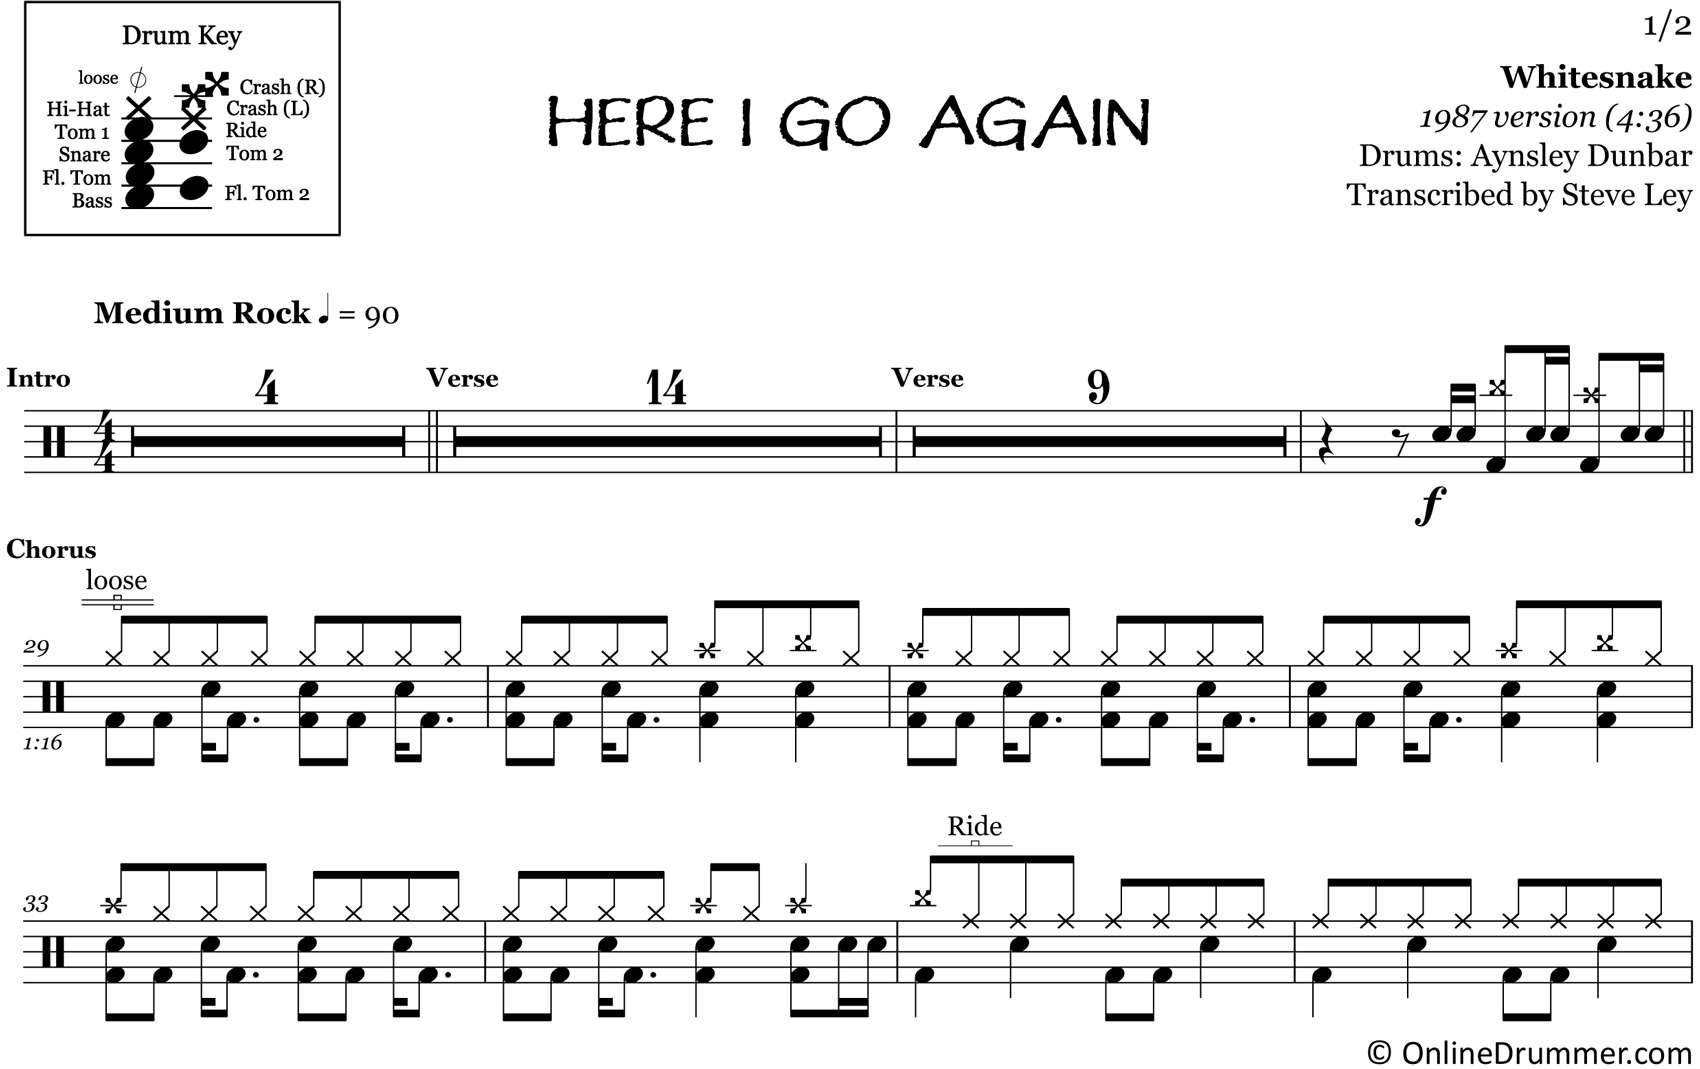 Here I Go Again - Whitesnake - Drum Sheet Music